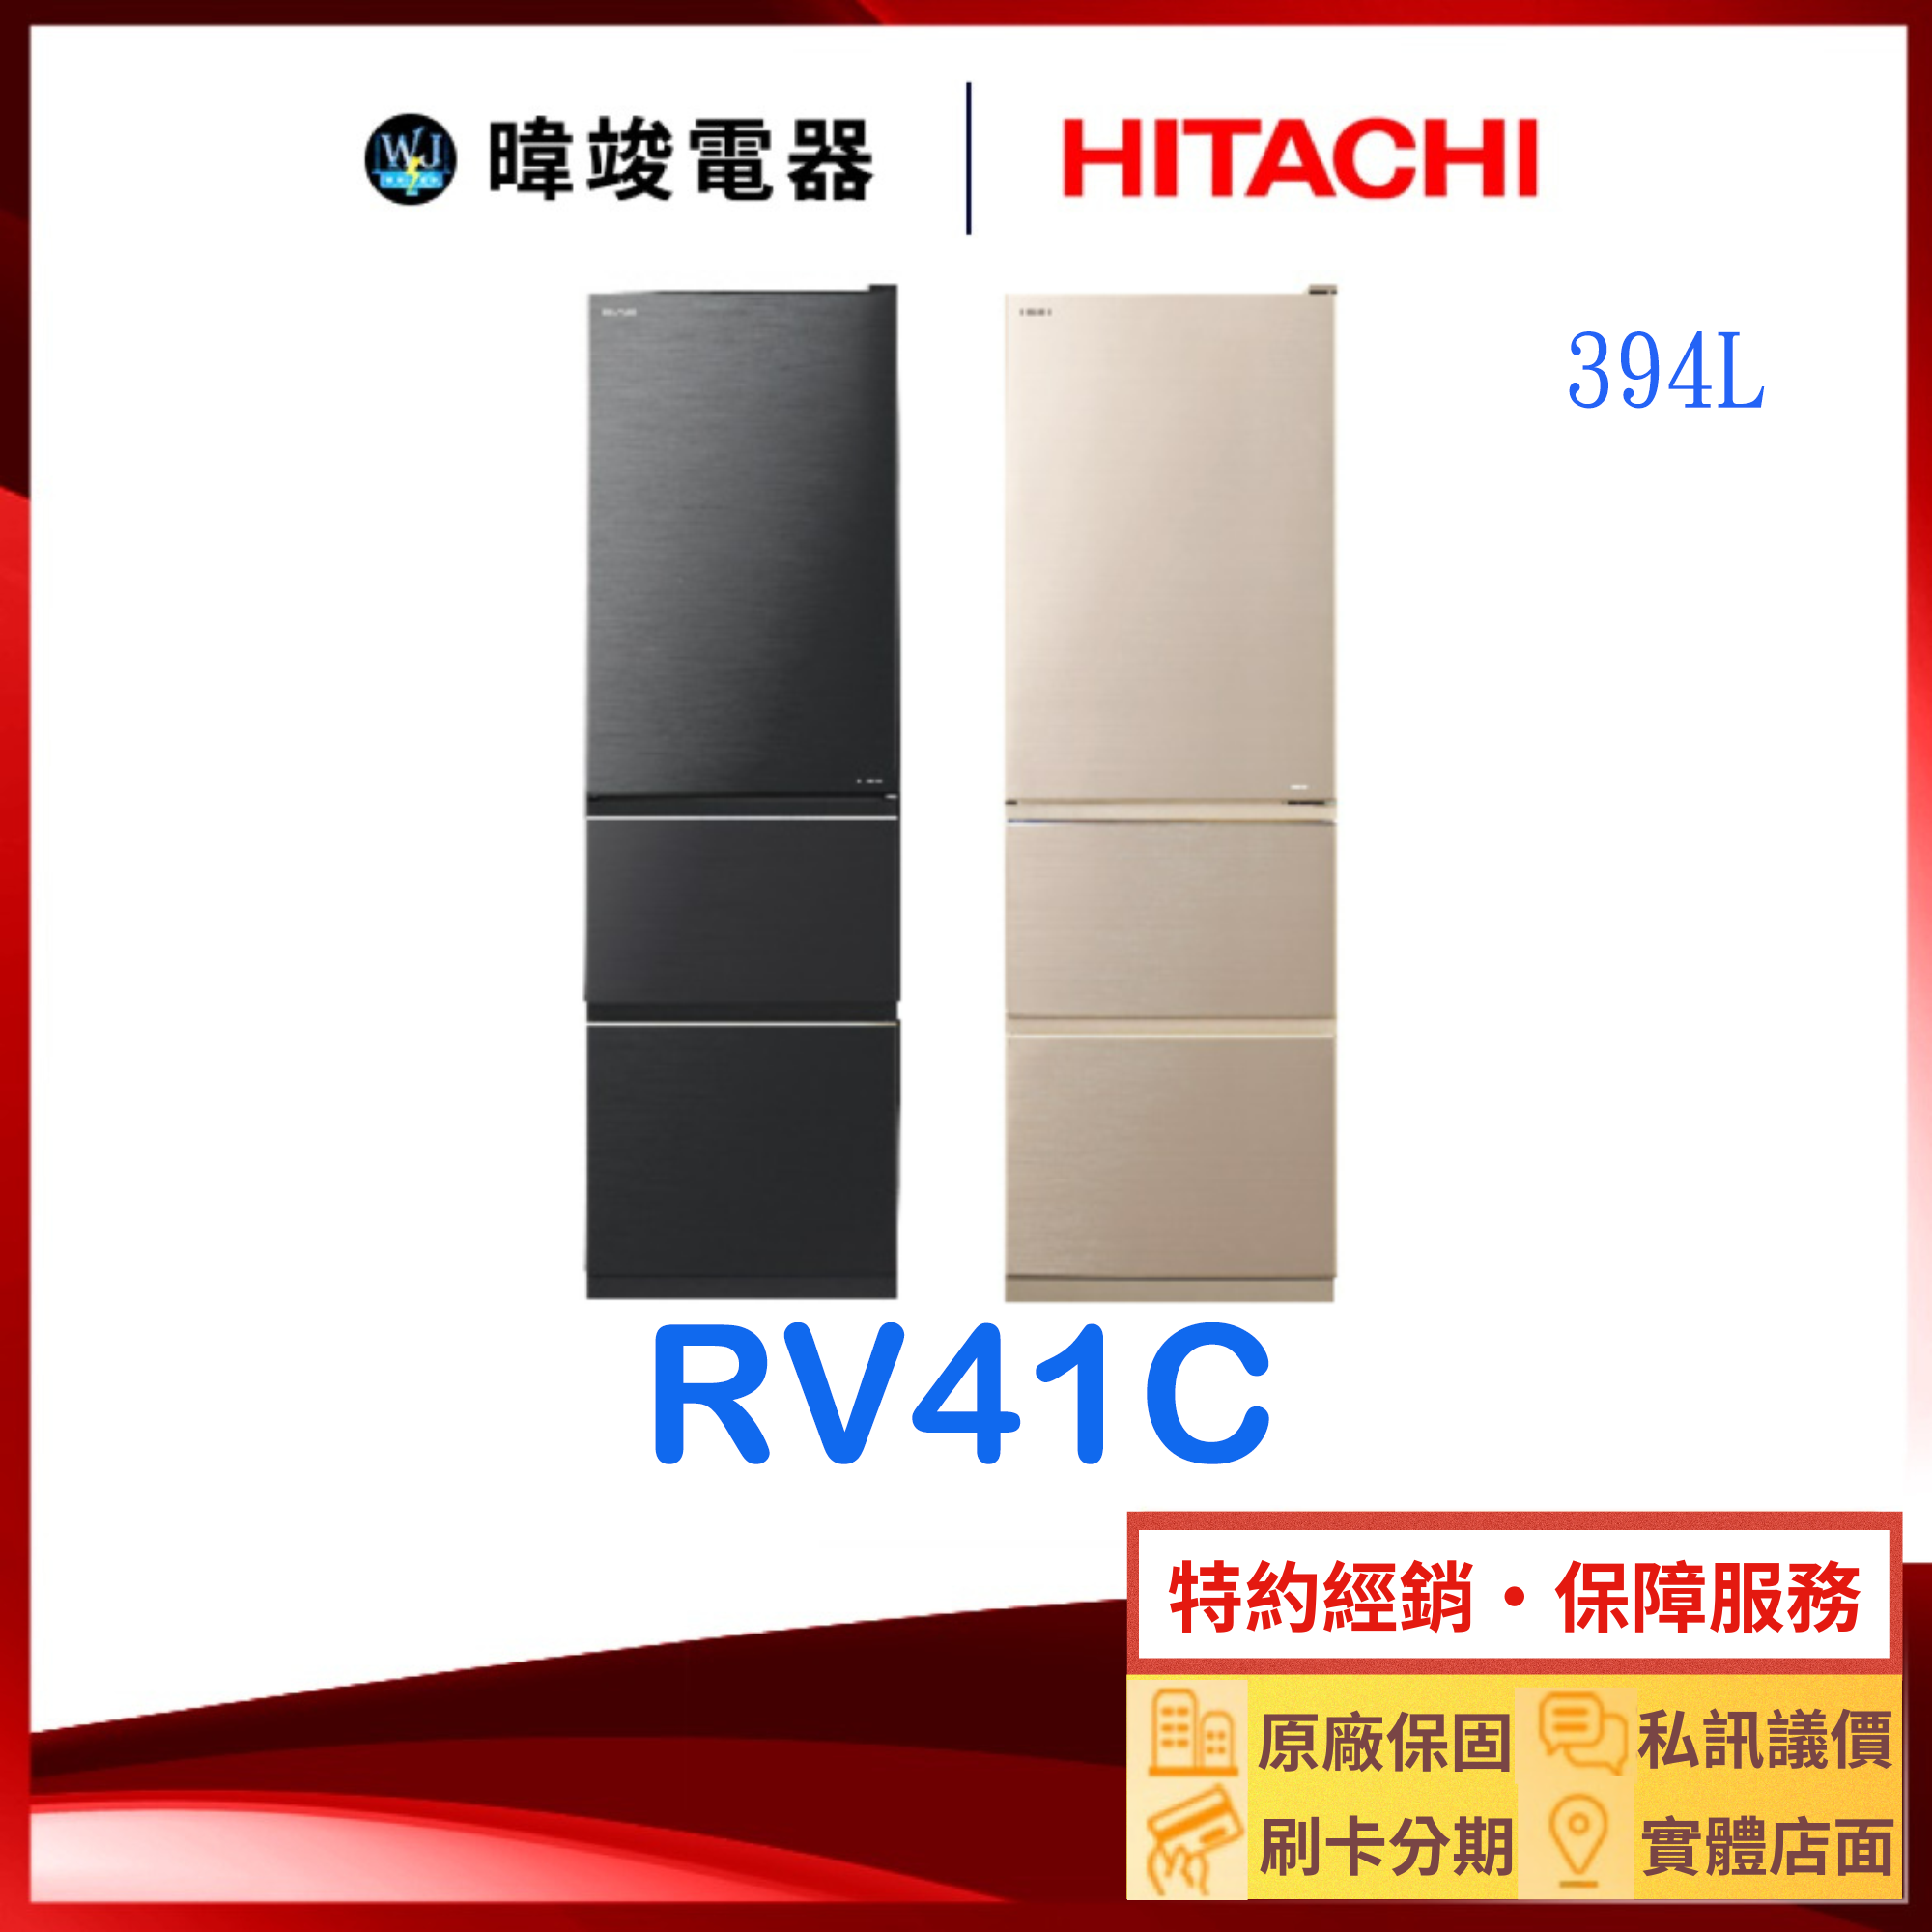 有現貨【獨家折扣碼】HITACHI 日立 RV41C 三門 鋼板 冰箱 1級能源效率 窄版設計 R-V41C